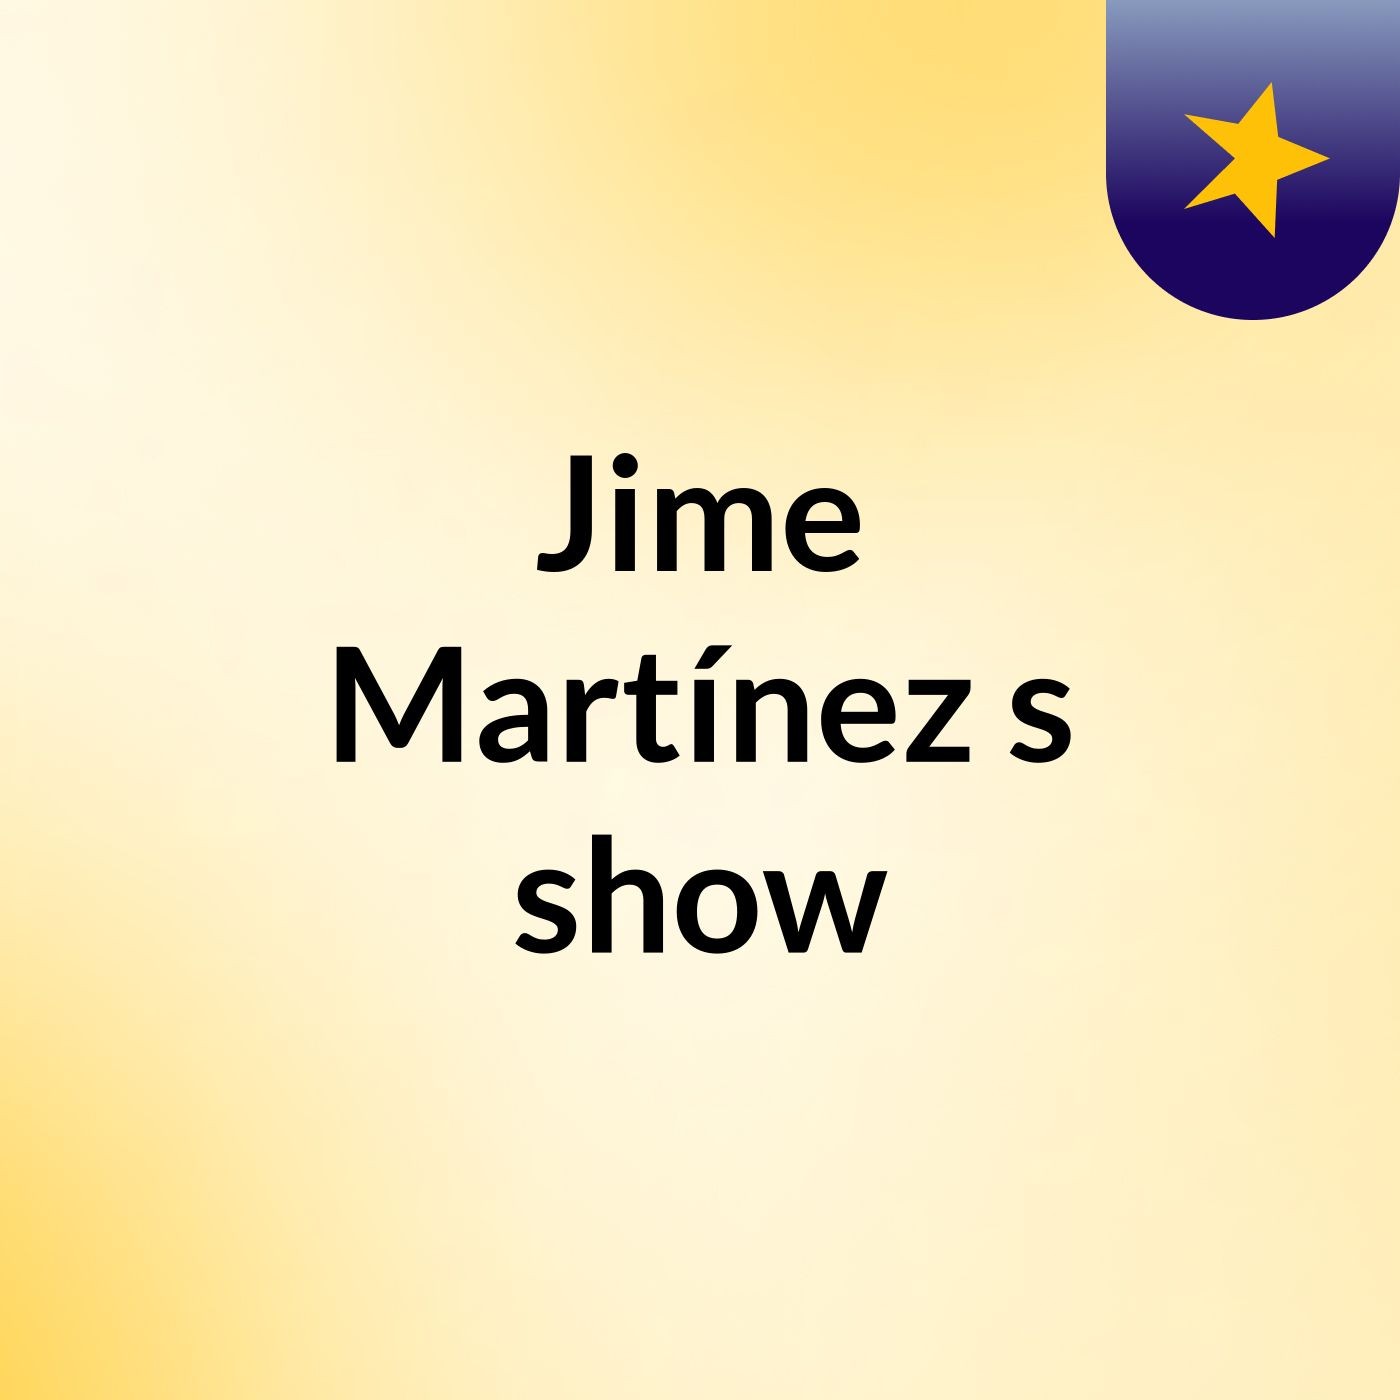 Jime Martínez's show